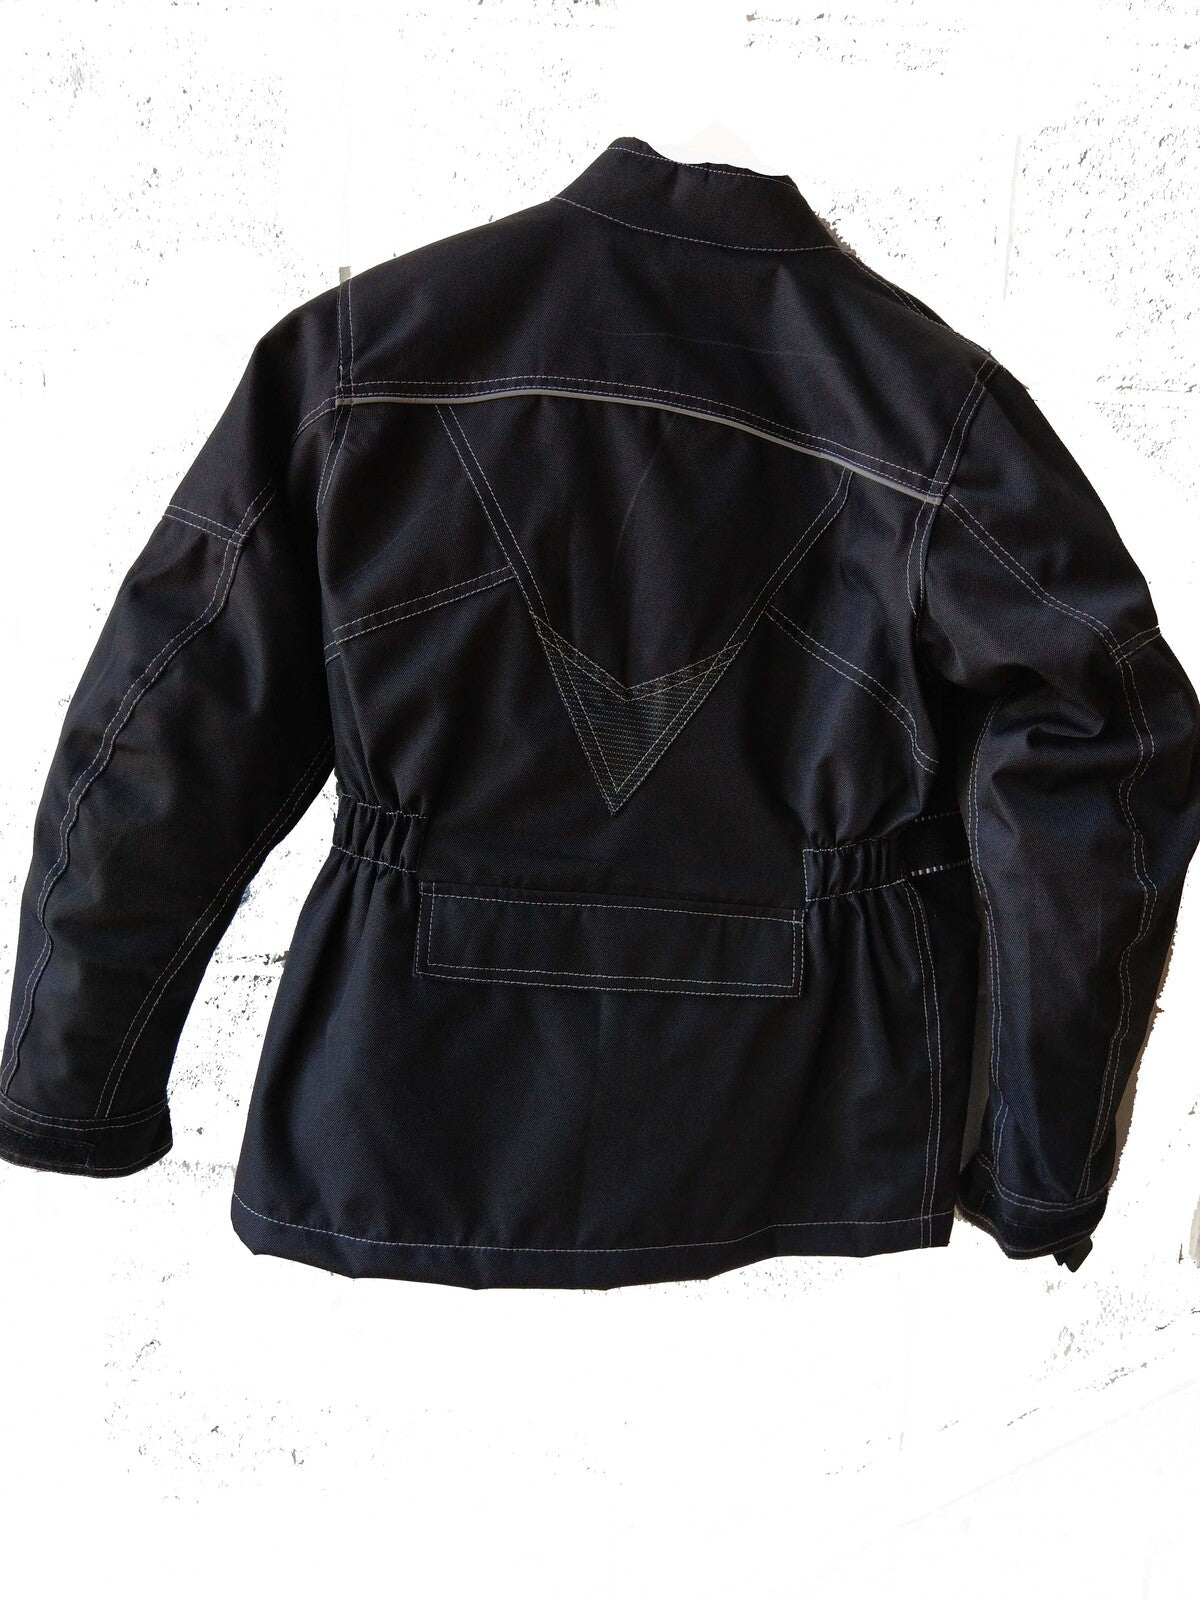 BGA Tourex Kids WP Motorcycle Textile Jacket